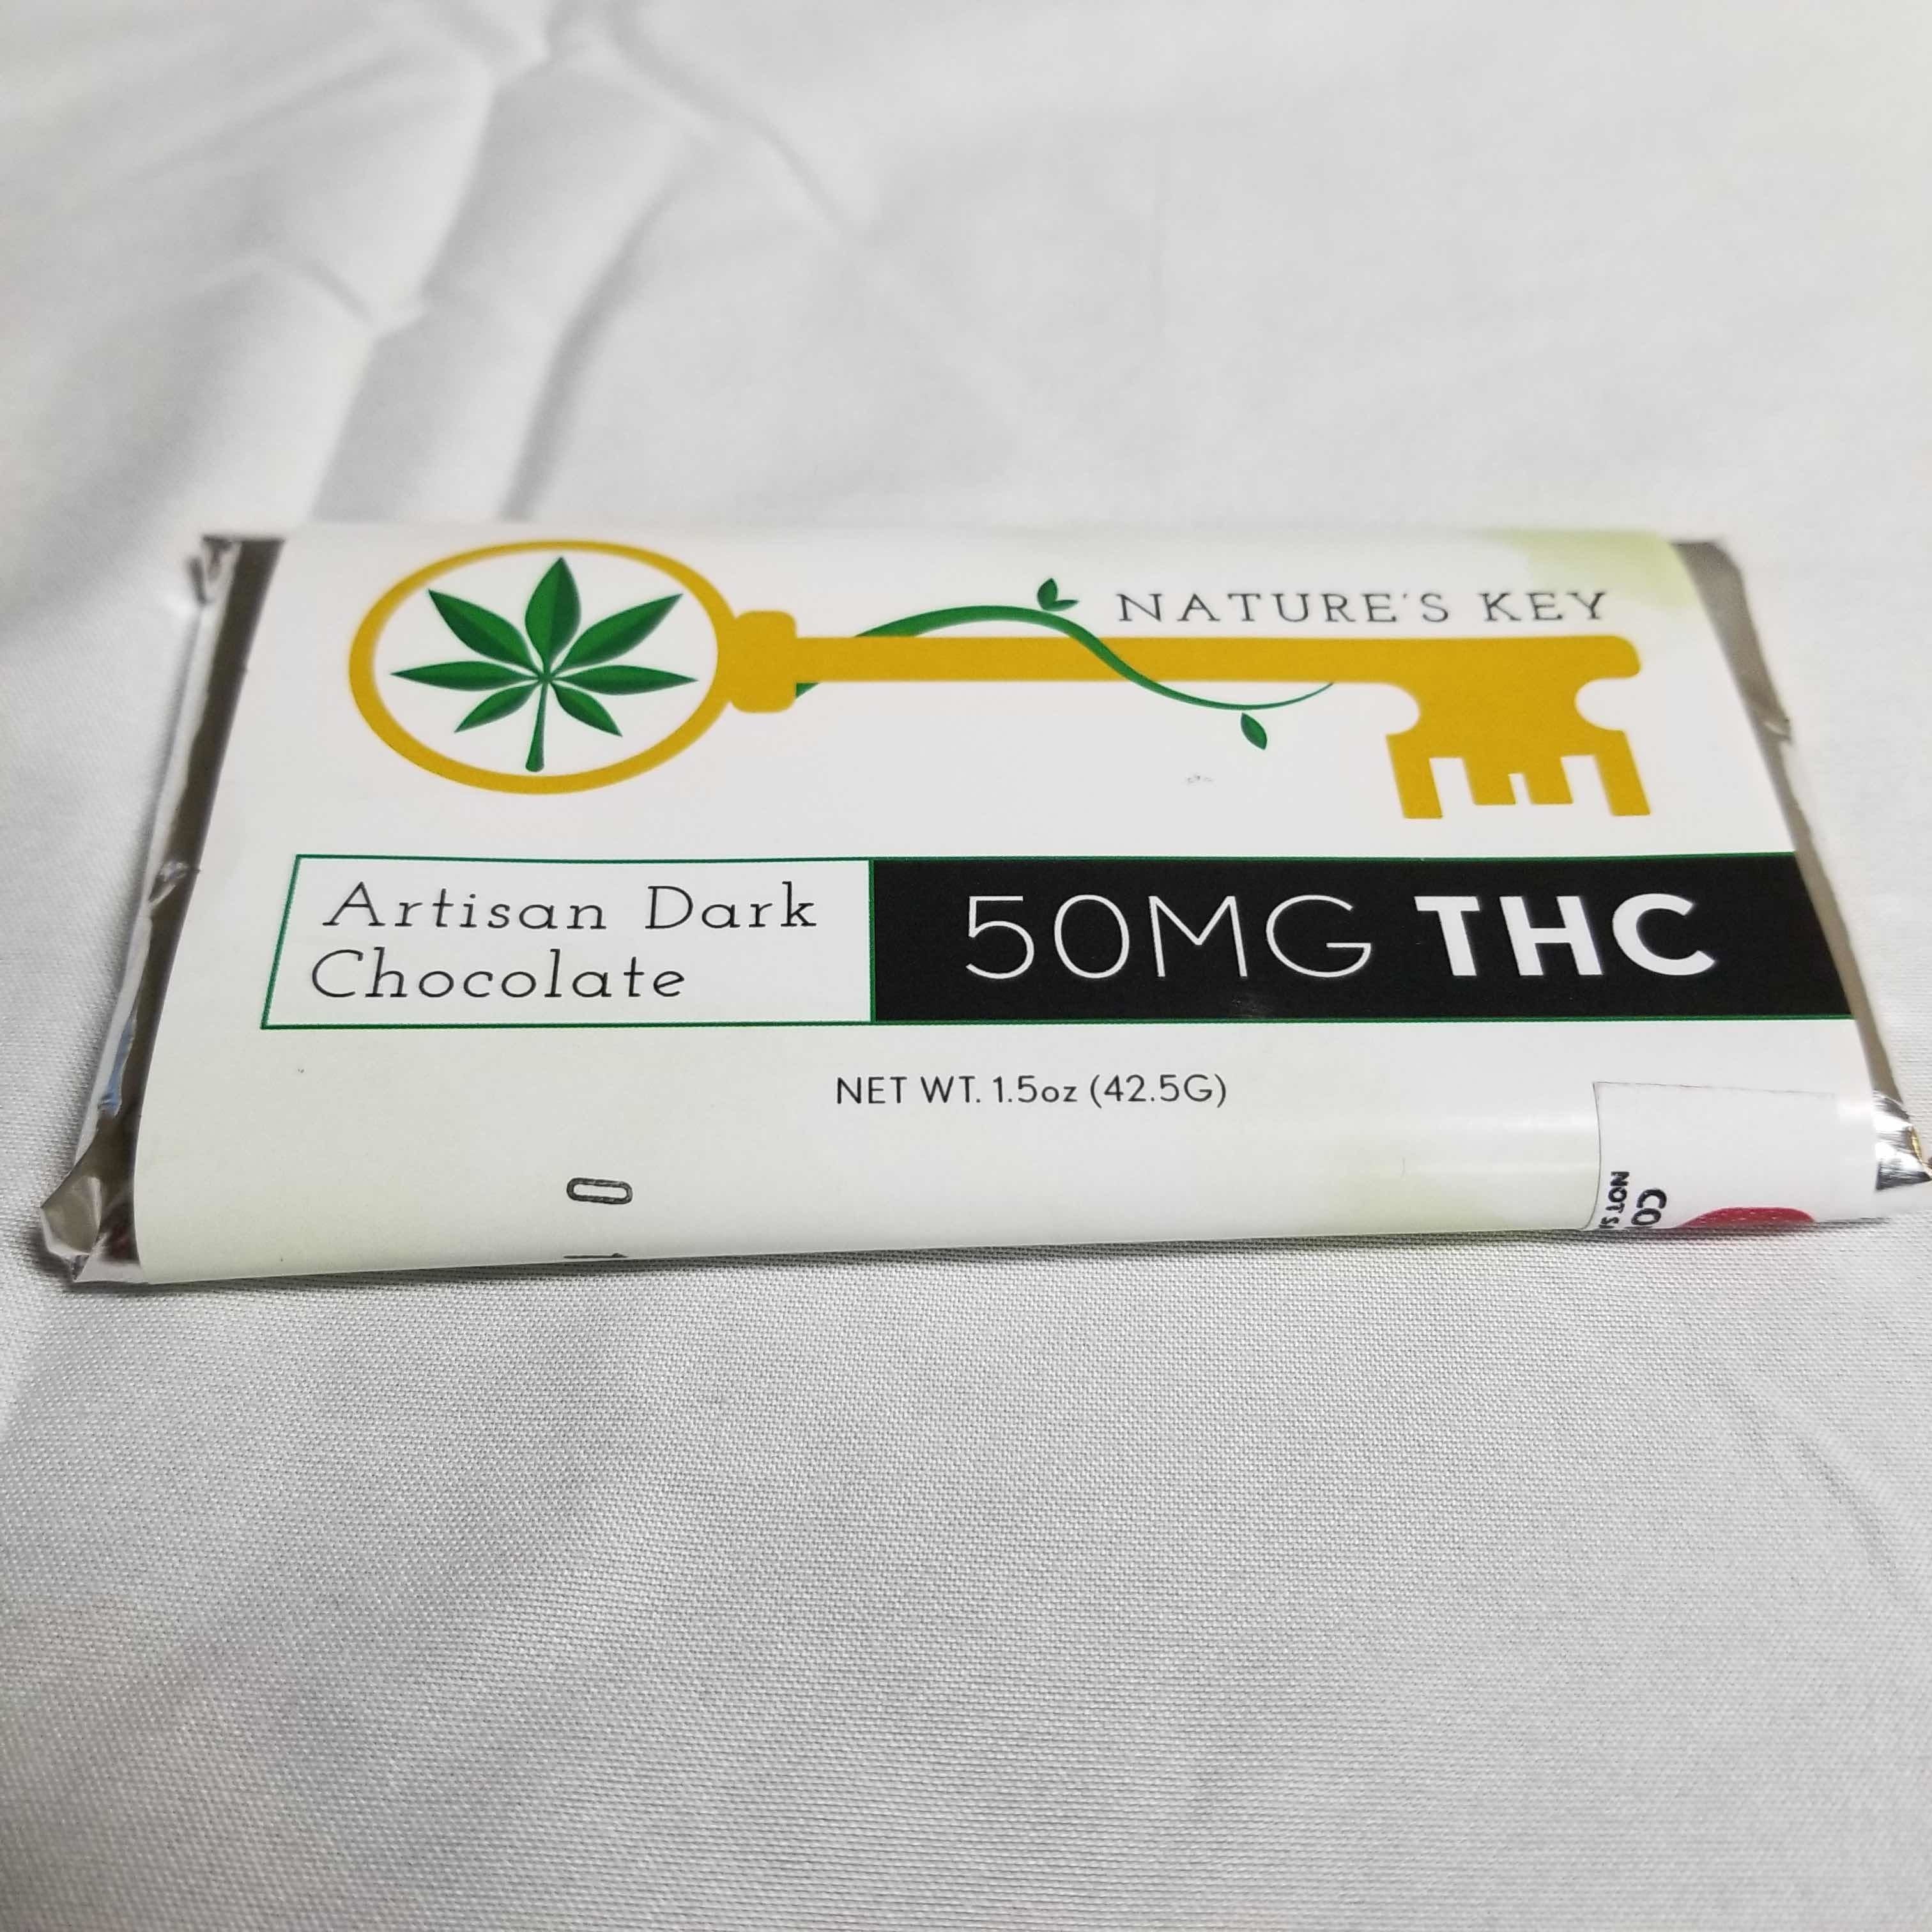 marijuana-dispensaries-8160-s-memorial-drive-tulsa-natures-key-50mg-dark-chocolate-bar